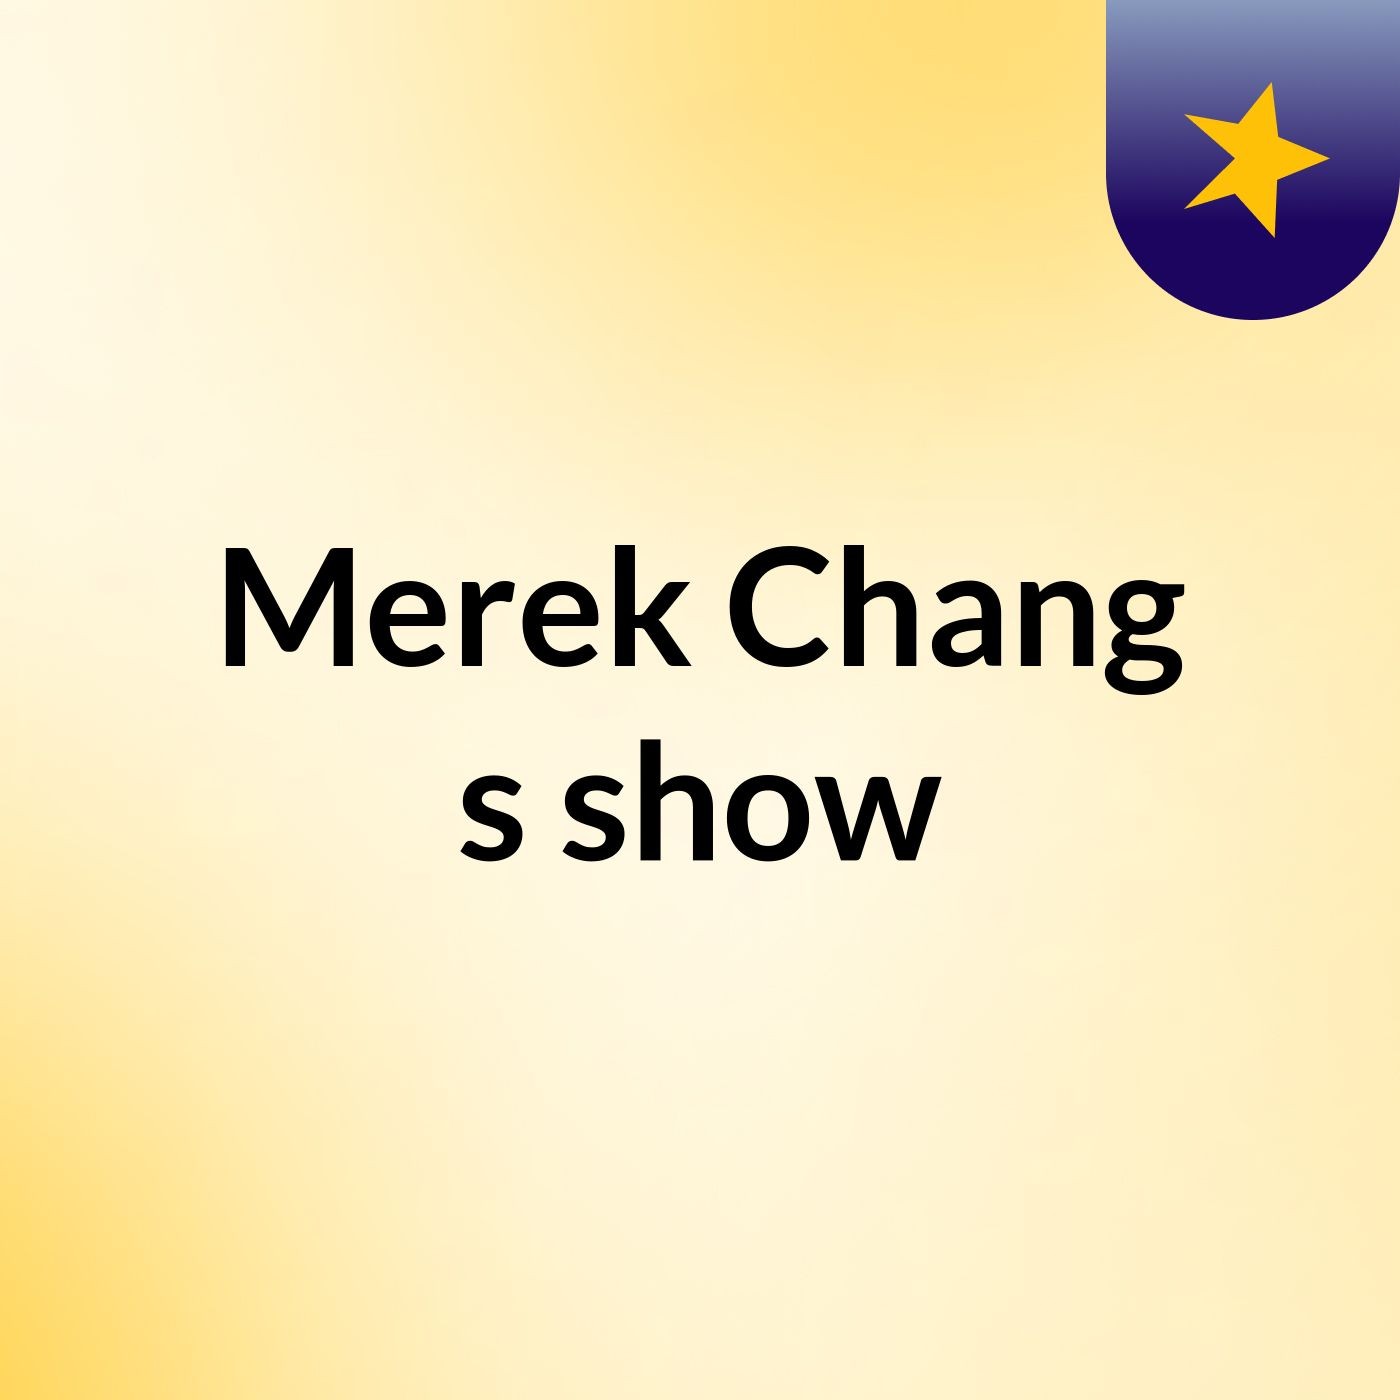 Merek Chang's show